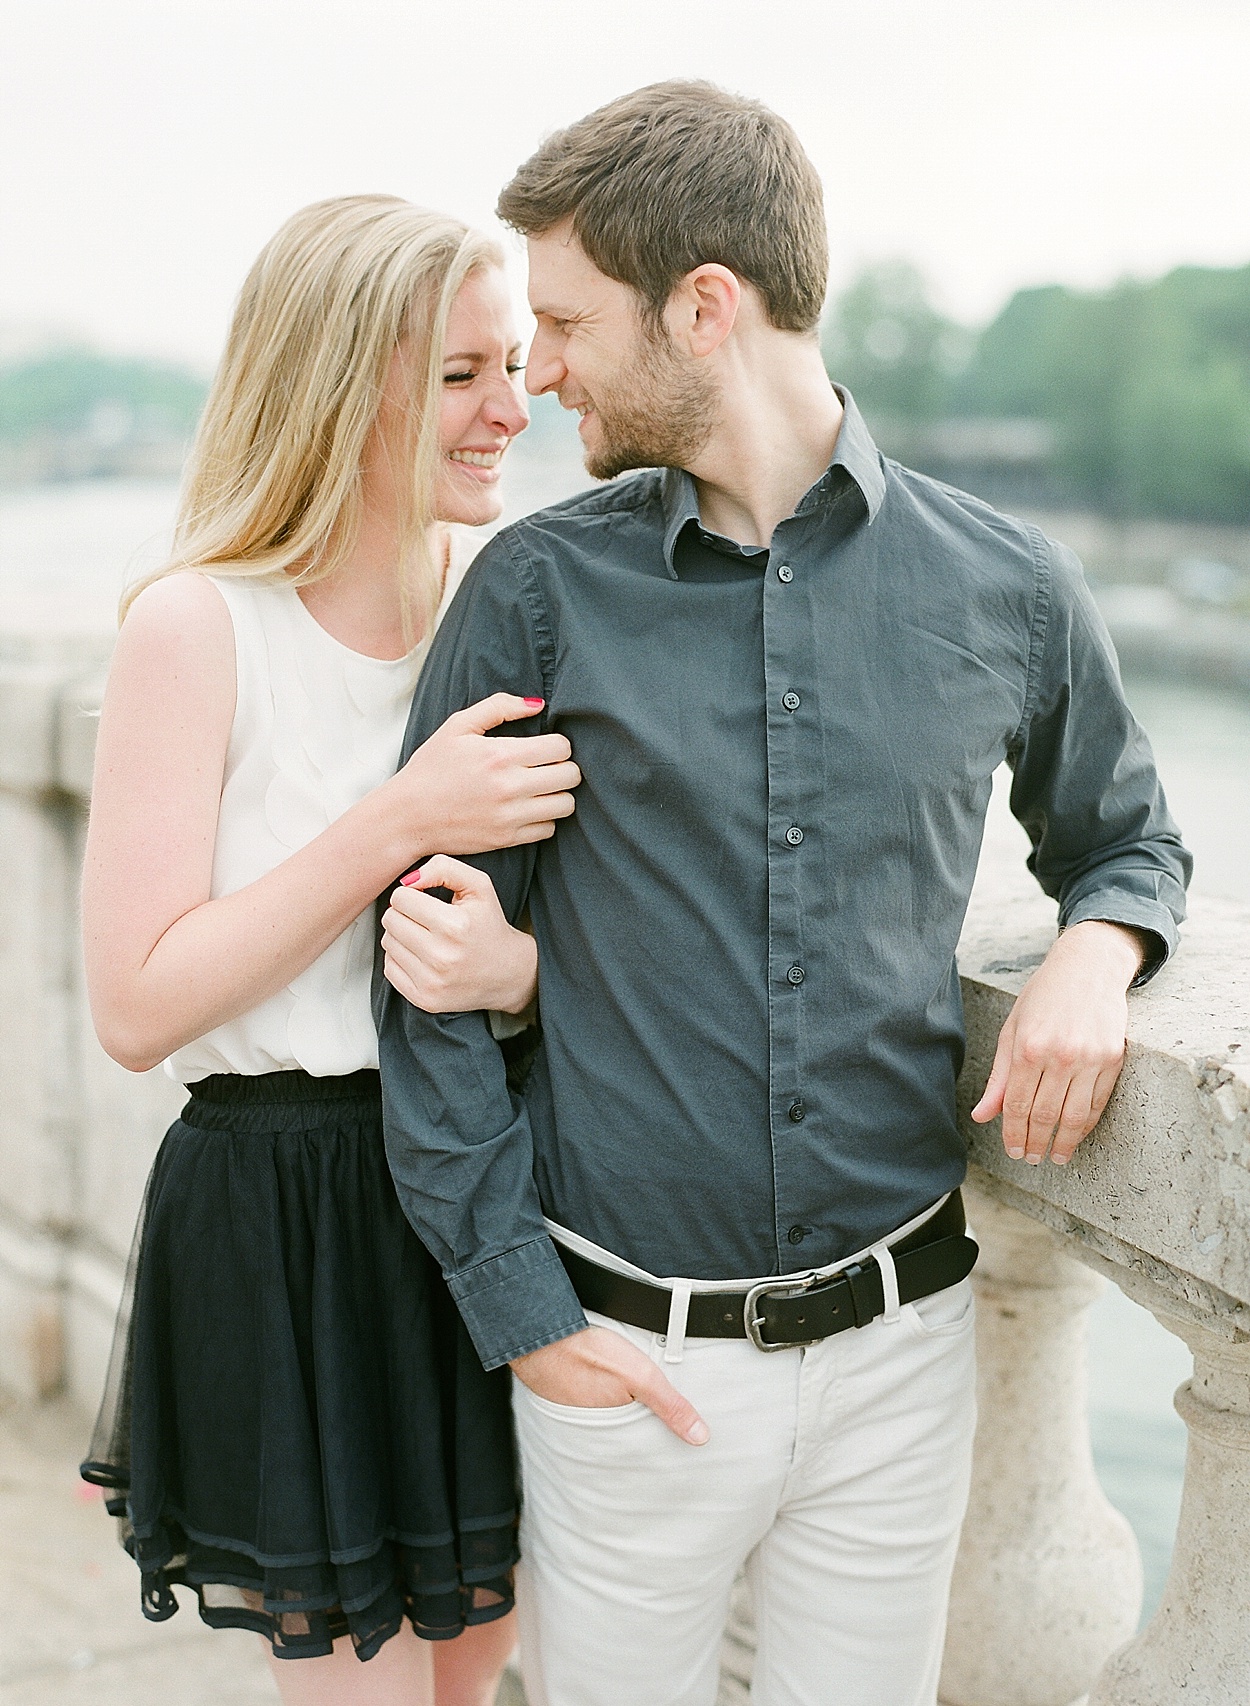 romantic Paris, France portraits at Pont de Bir-Hakeim | Abby Grace Photography